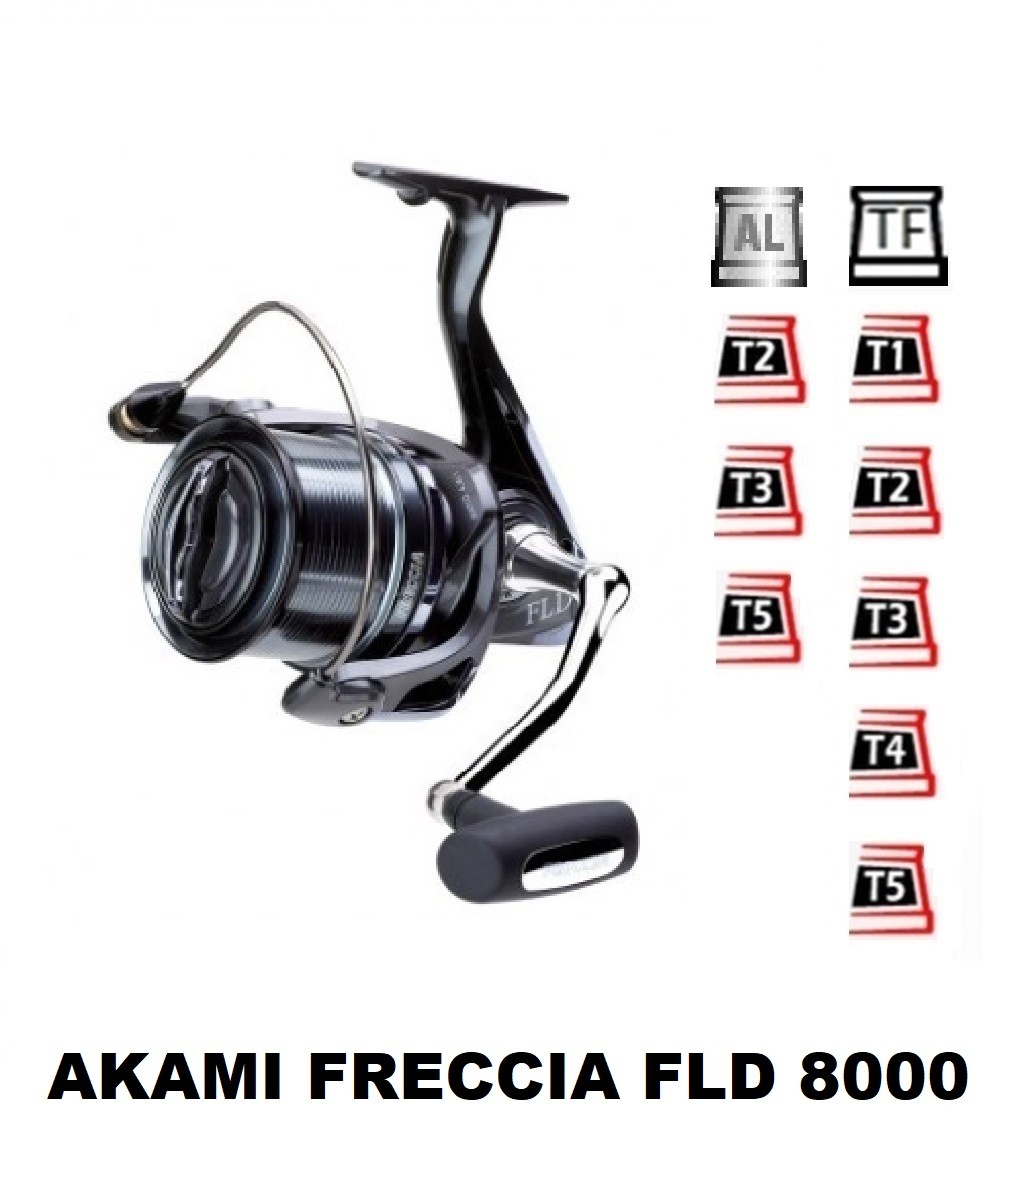 Akami Freccia FLD 8000 Spare Spools